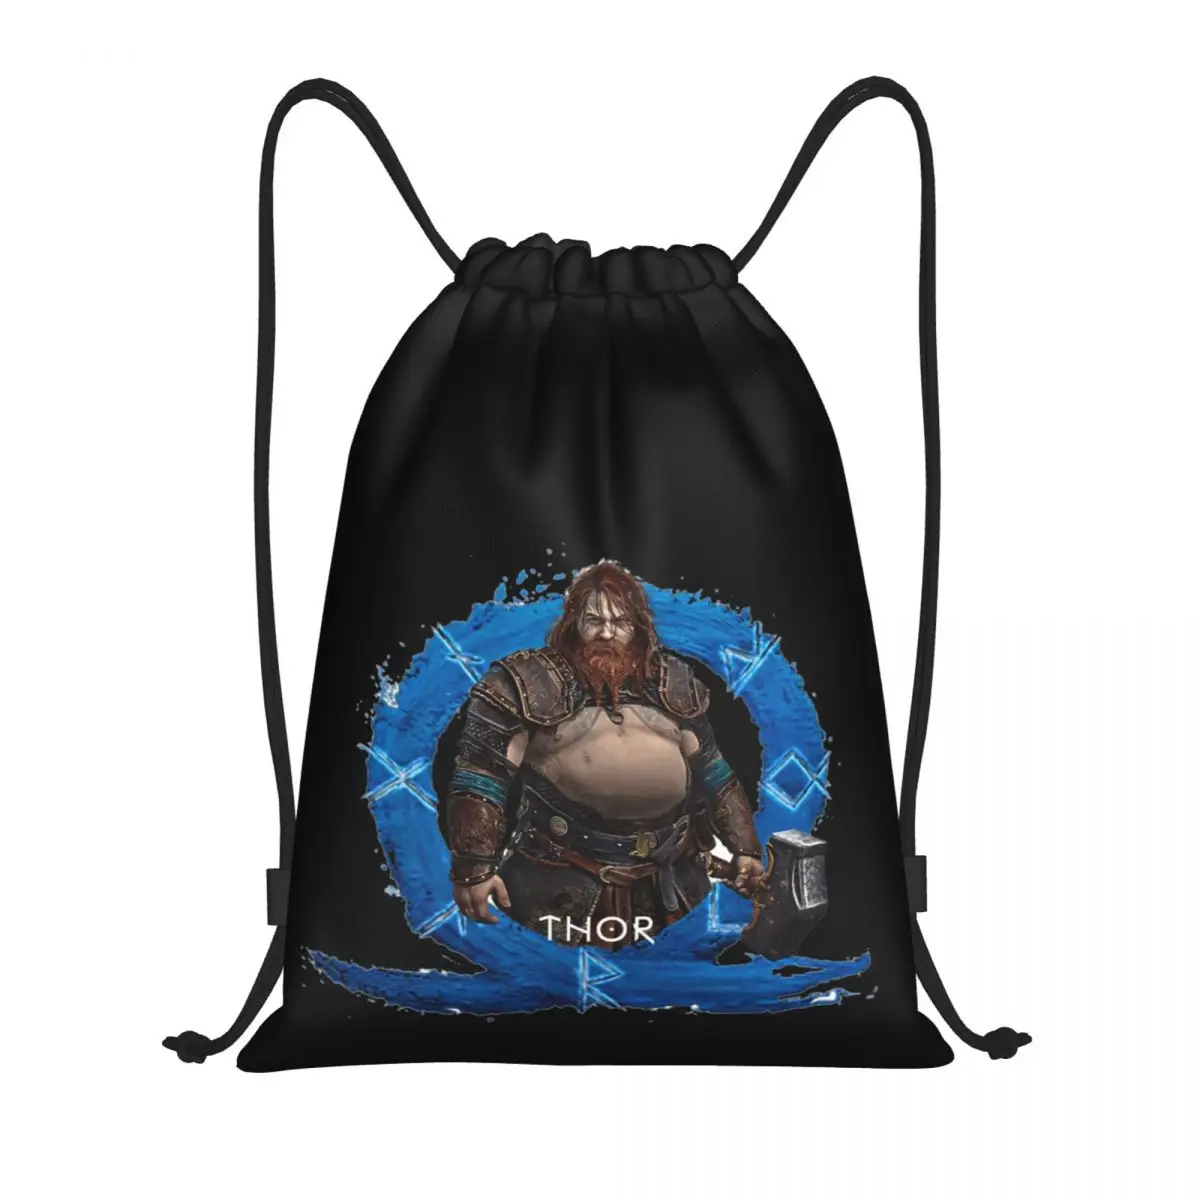 

Kratos God Of War 2 Ragnarok Is Coming 1 Drawstring Bags Gym Bag Funny Backpack Funny Joke Knapsack Picnics